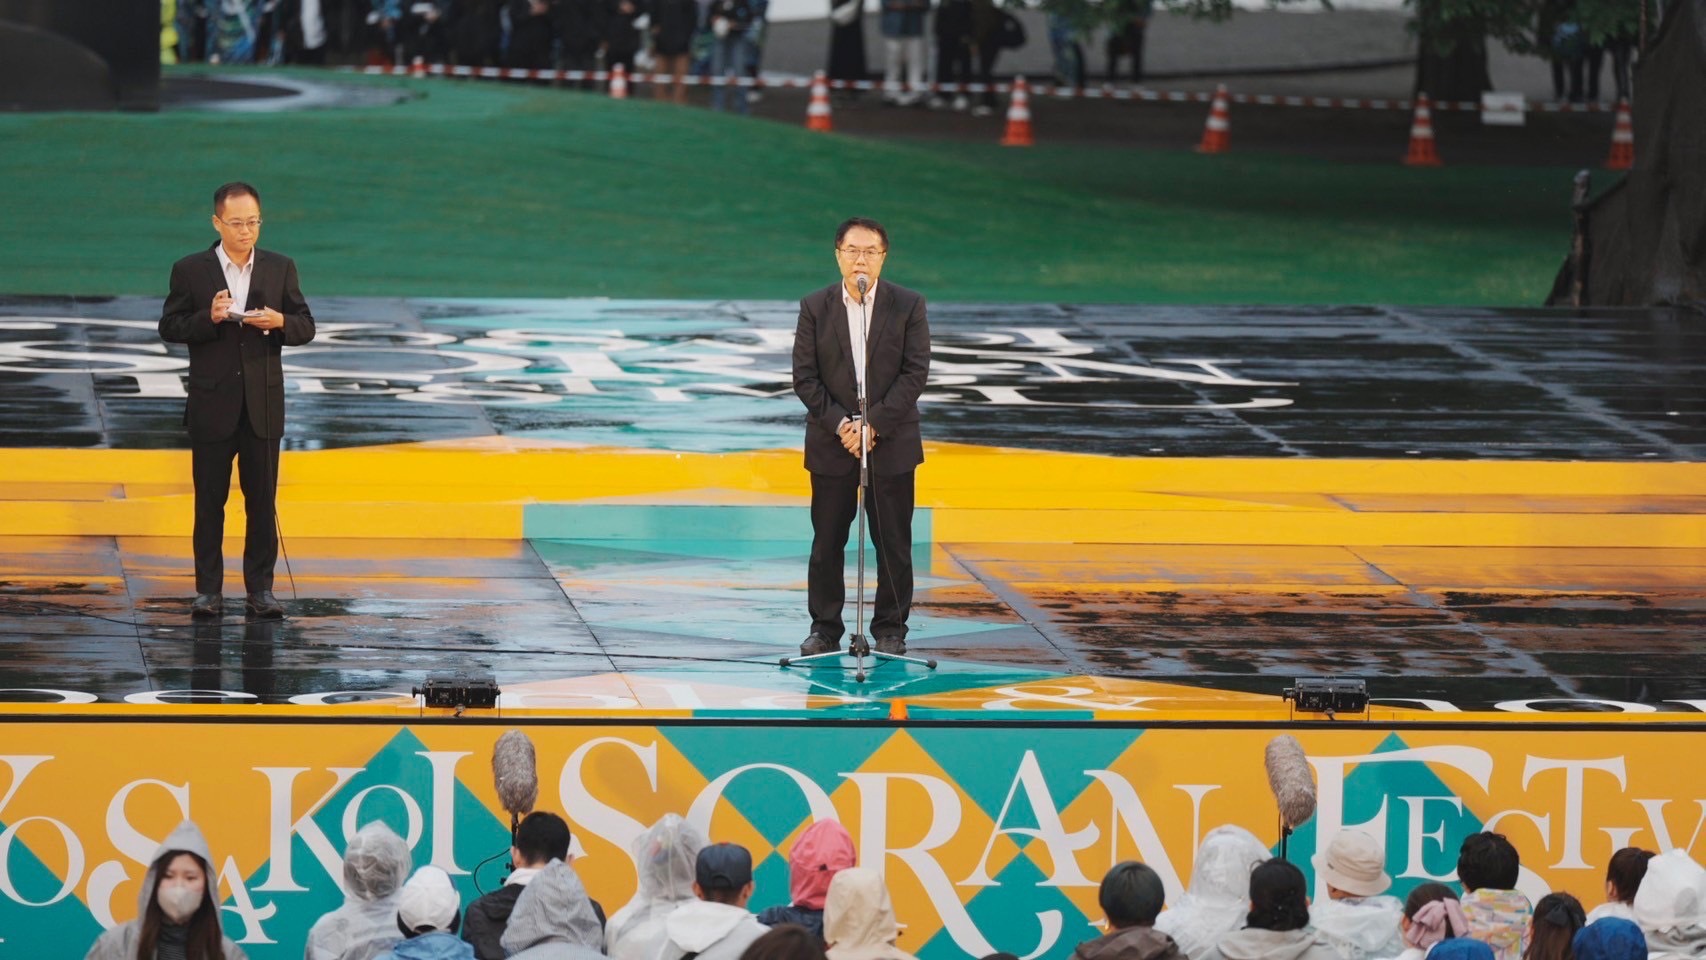 黃偉哲受邀在索朗祭壓軸的大賞表演致詞